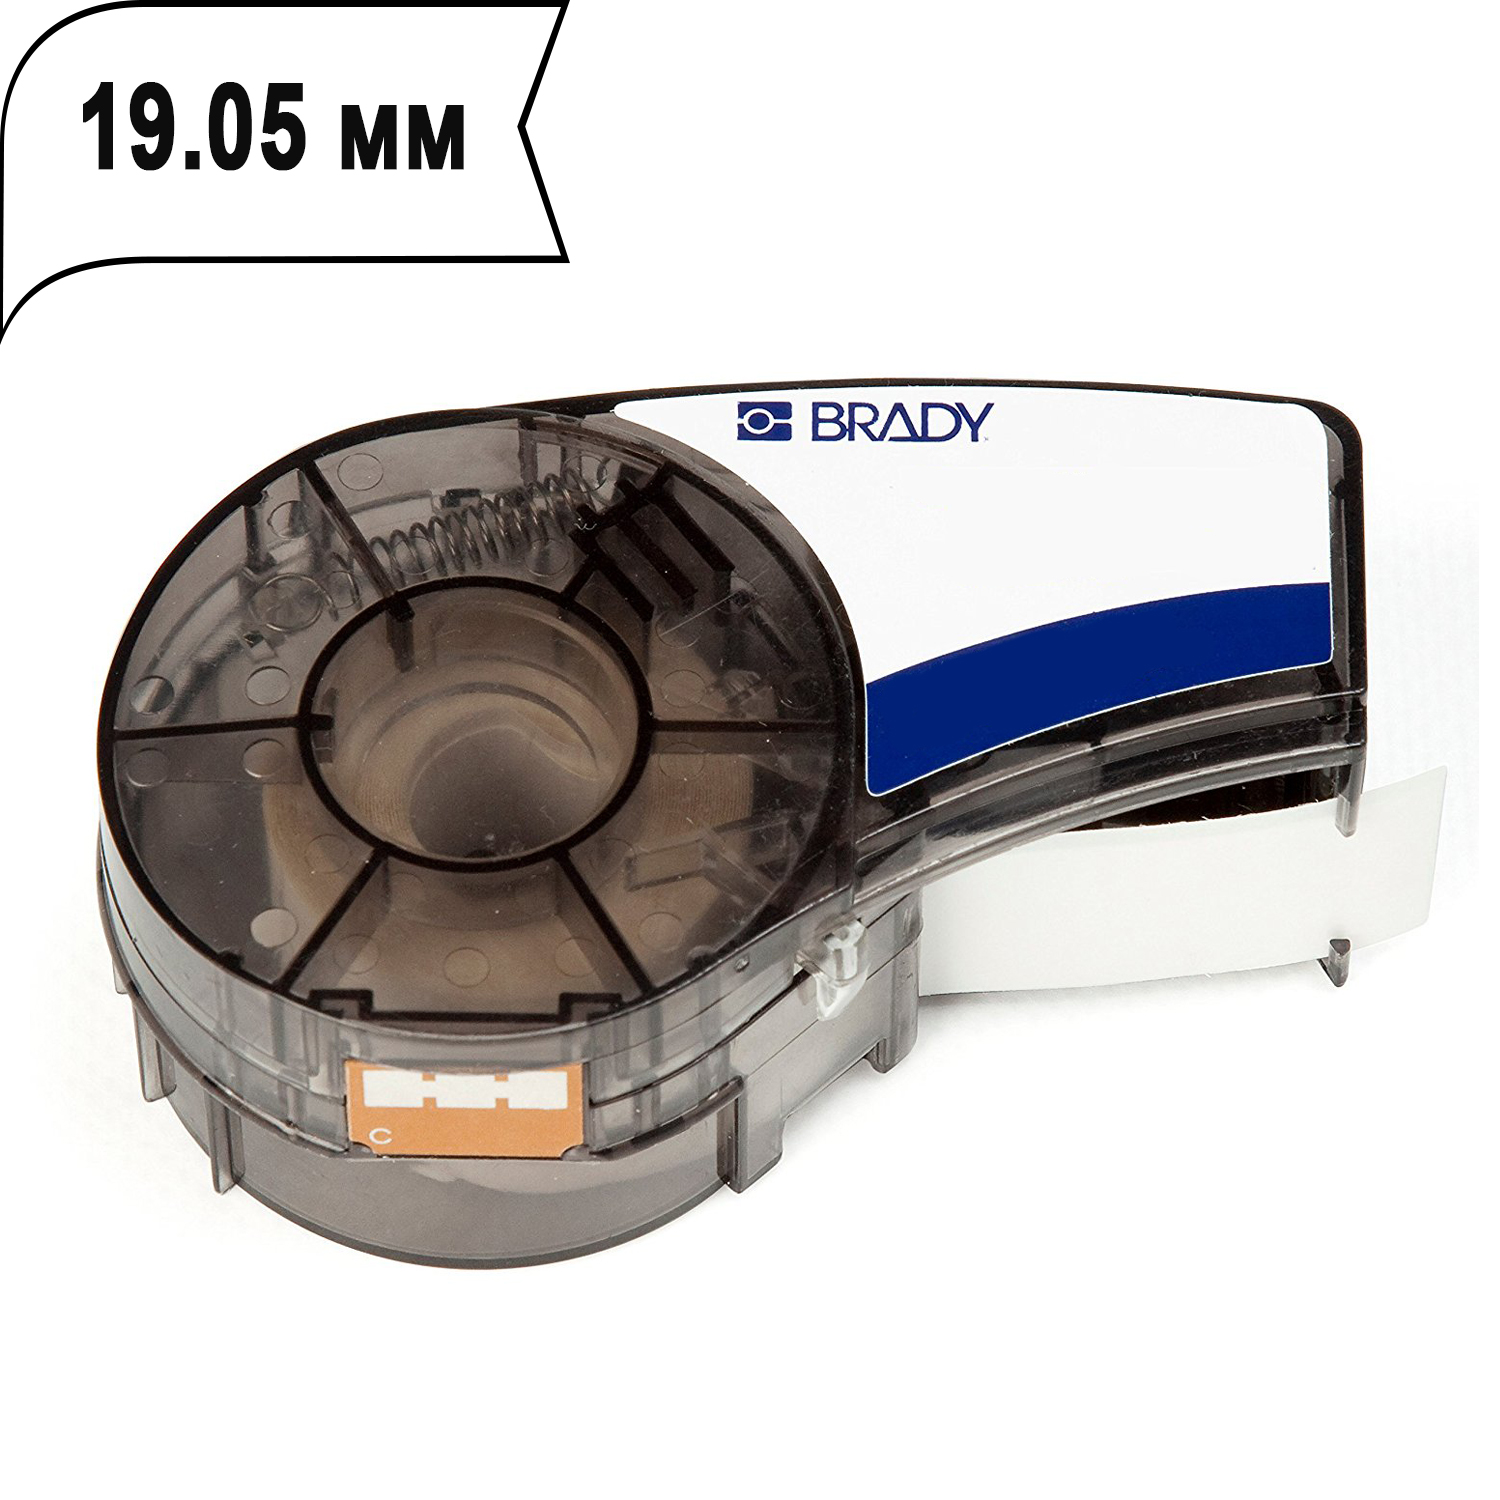 Картридж для термопринтера Brady M21-750-595-WT (brd142797) белый, оригинальный